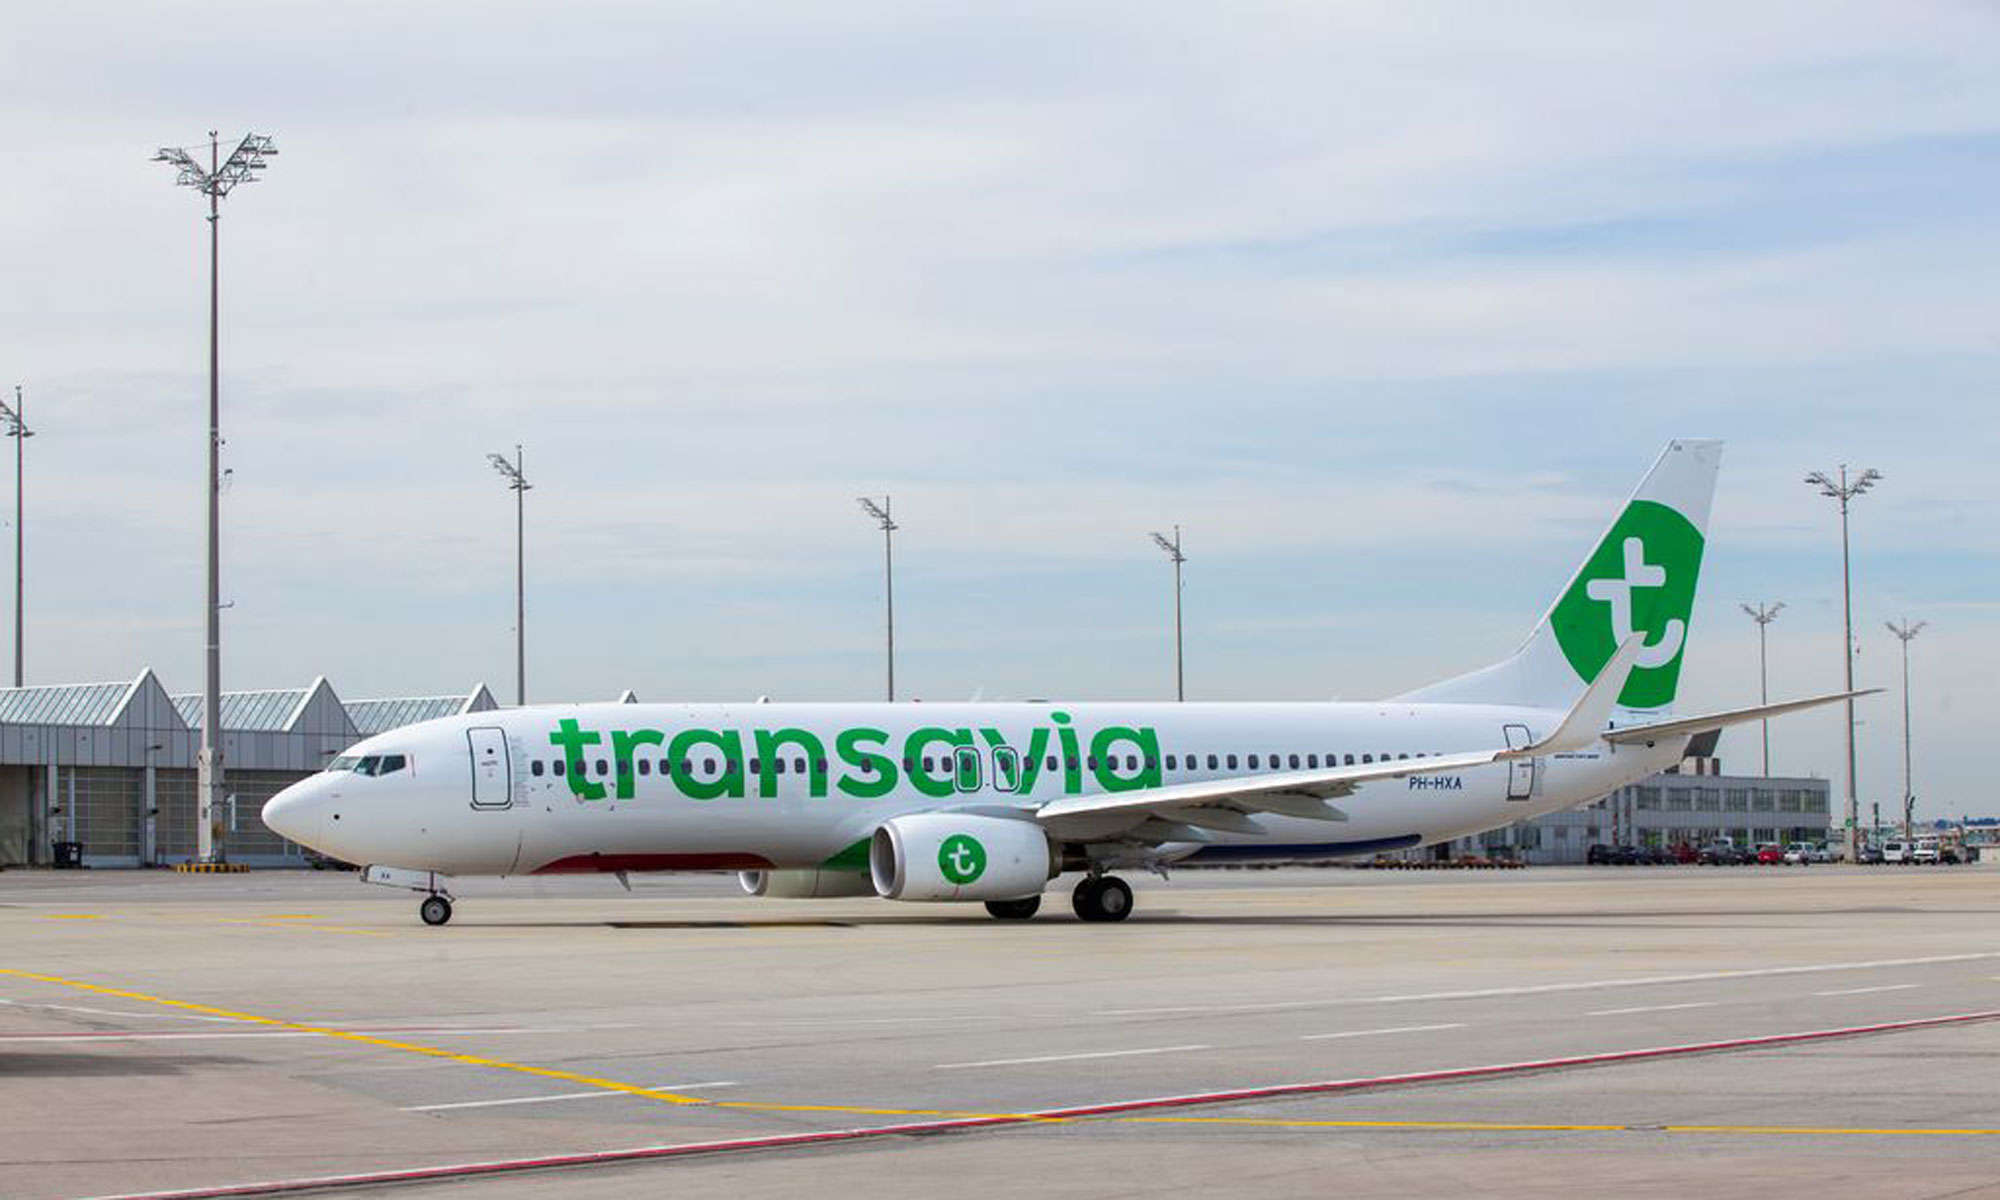 Chuyến bay Transavia từ Eindhoven hạ cánh khẩn cấp xuống sân bay Gran Canaria sau khi nghi ngờ có hỏa hoạn